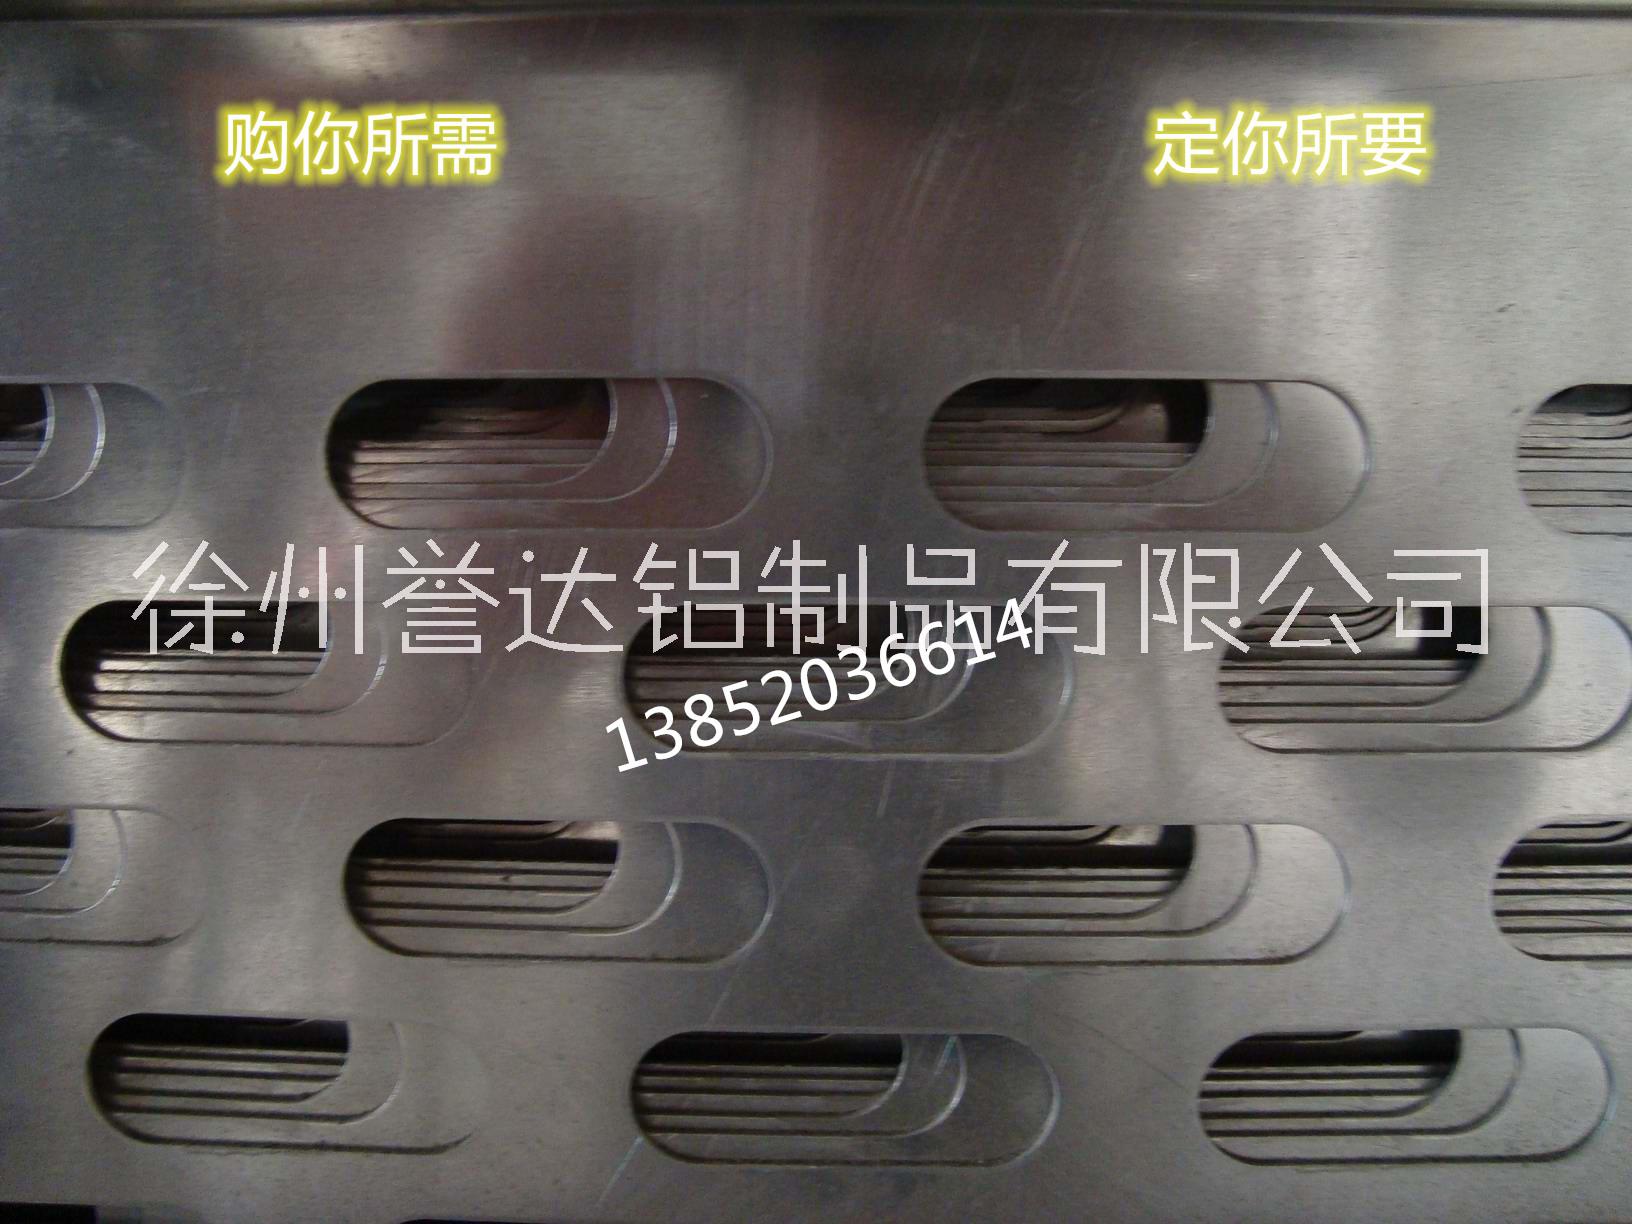 江苏长腰圆孔铝板厂家江苏合金铝板定制冲孔铝板直销商长腰圆孔铝板铝网16000元/吨图片